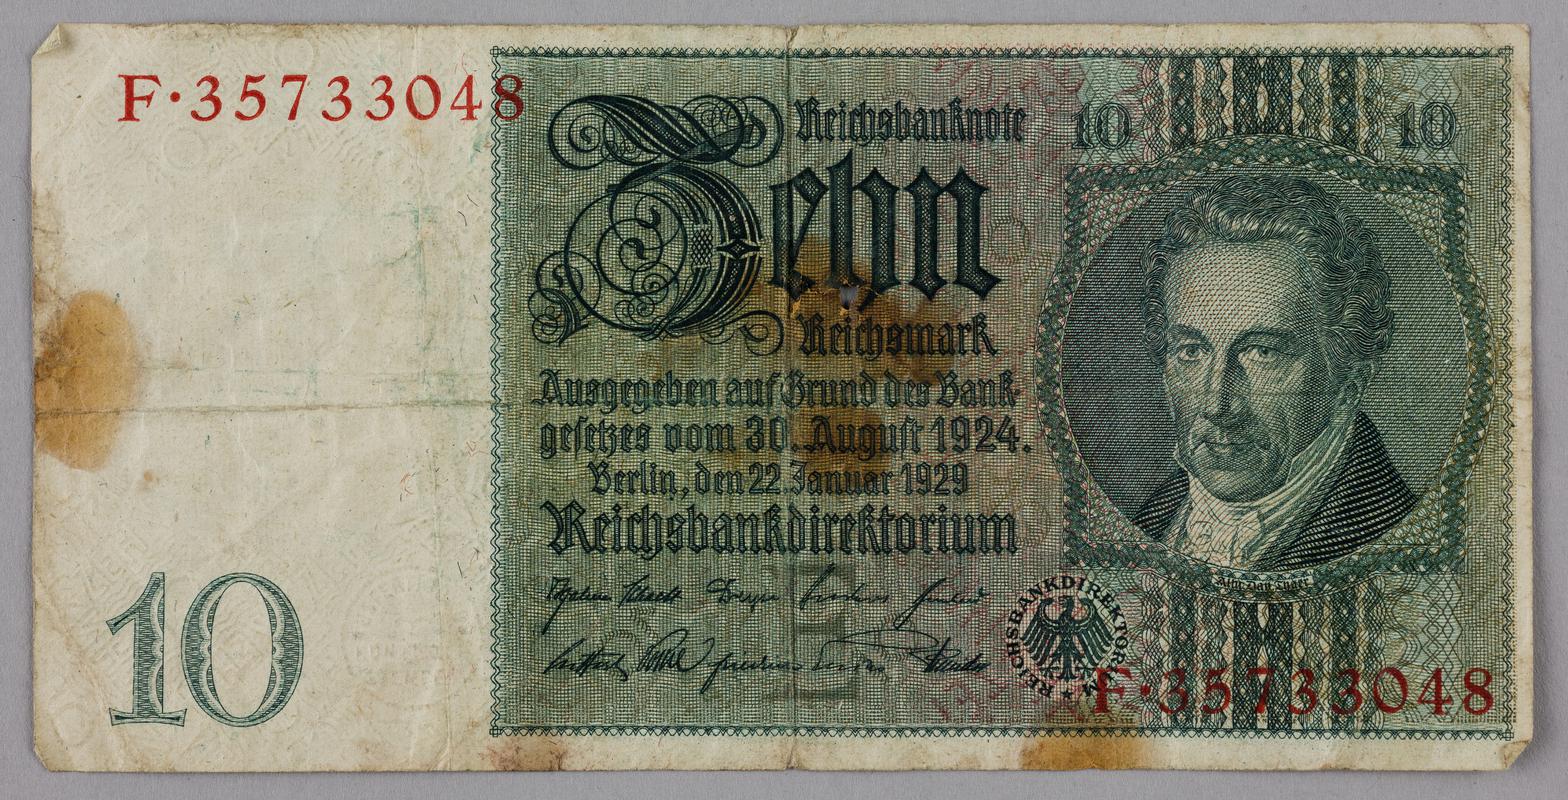 Bank note: 10 Reich Mark